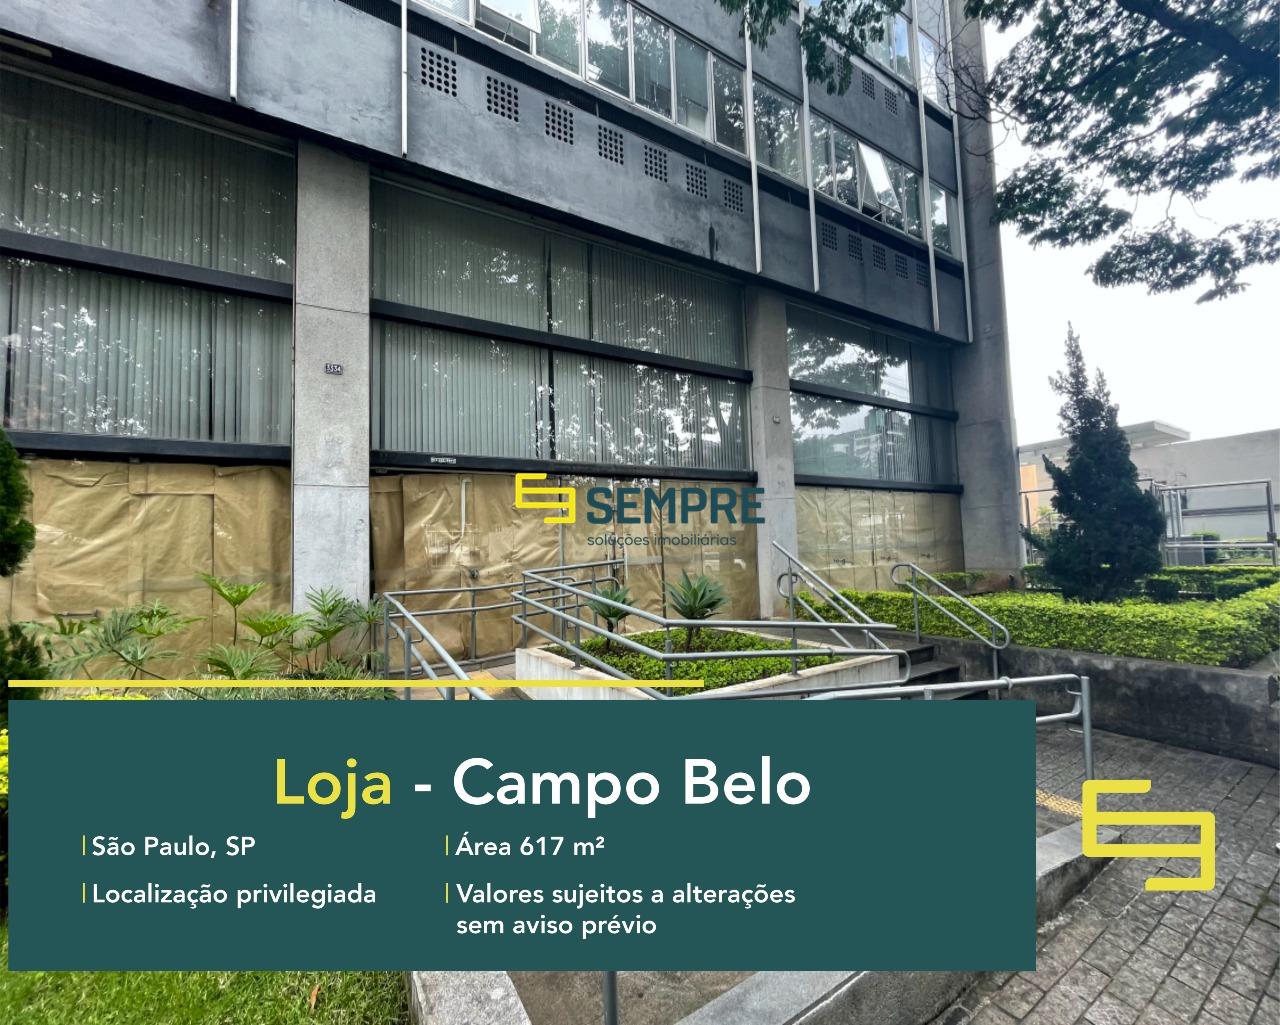 Loja para locação em São Paulo - Campo Belo, excelente localização. O estabelecimento comercial conta com área de 617,95 m².